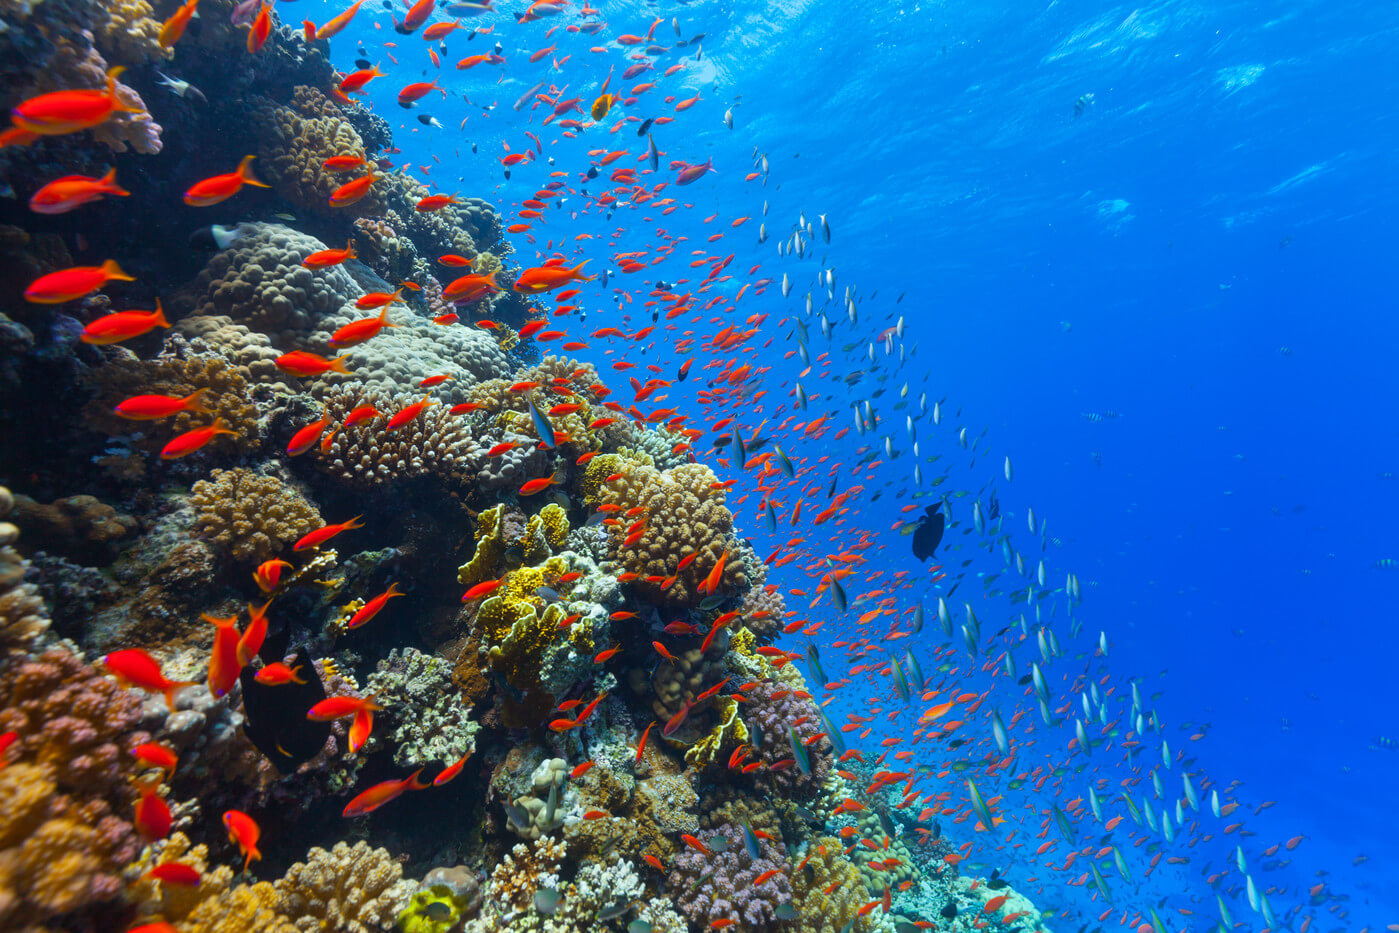 La acidez del agua en los océanos sube poco a poco. Cómo afecta esto a los animales?